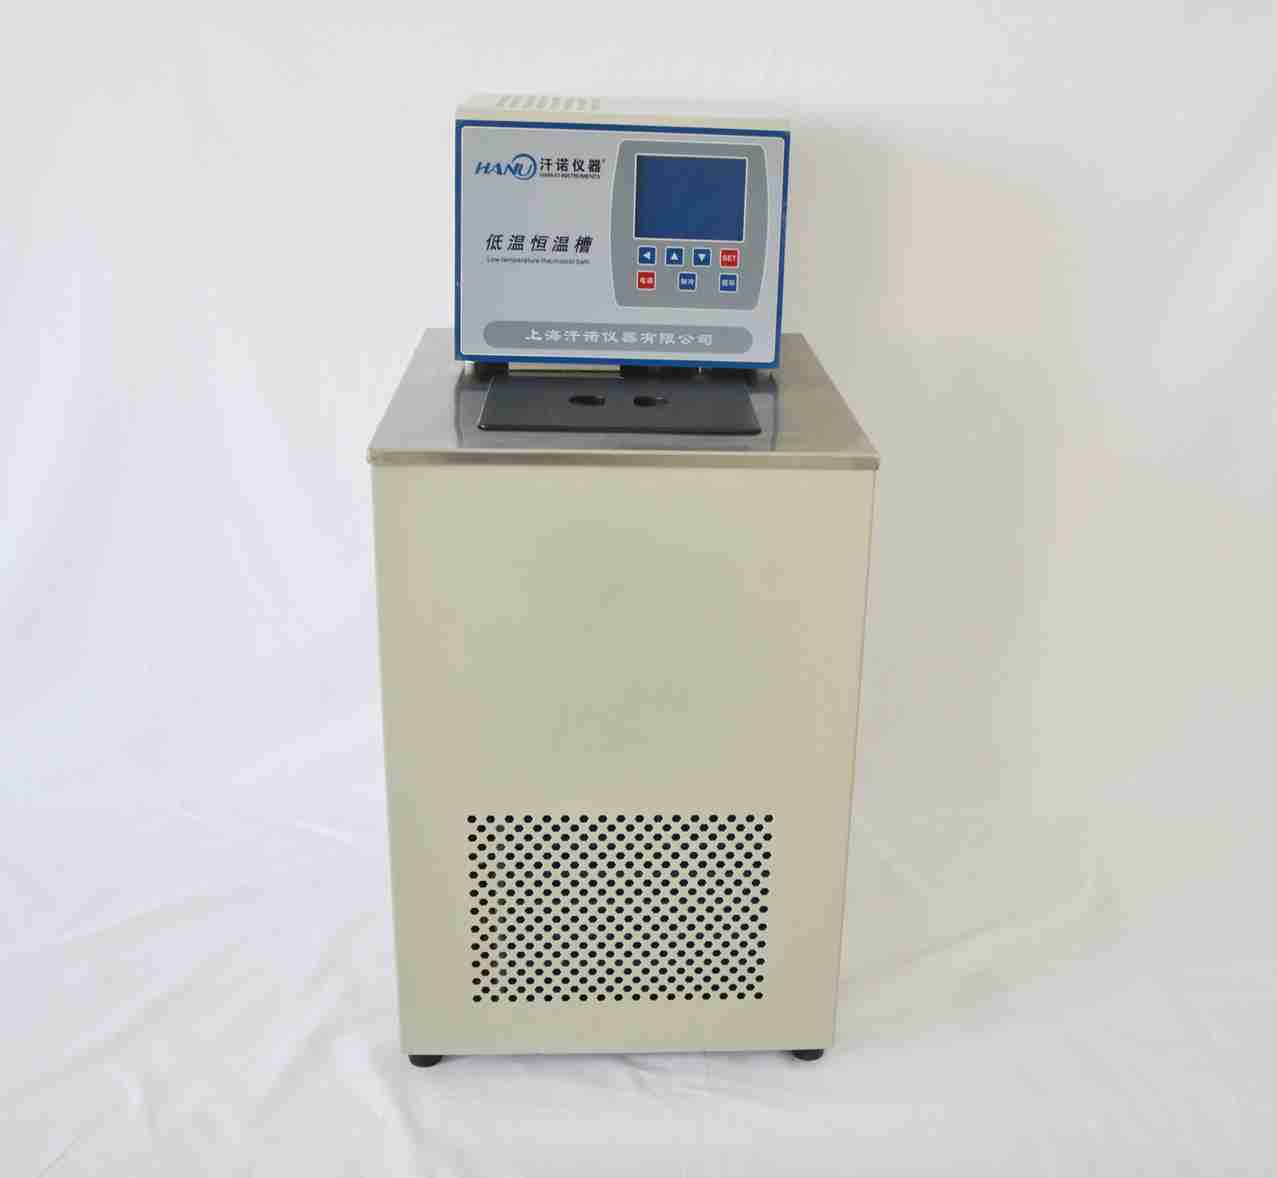 汗诺液晶低温冷却循环泵DL-1015